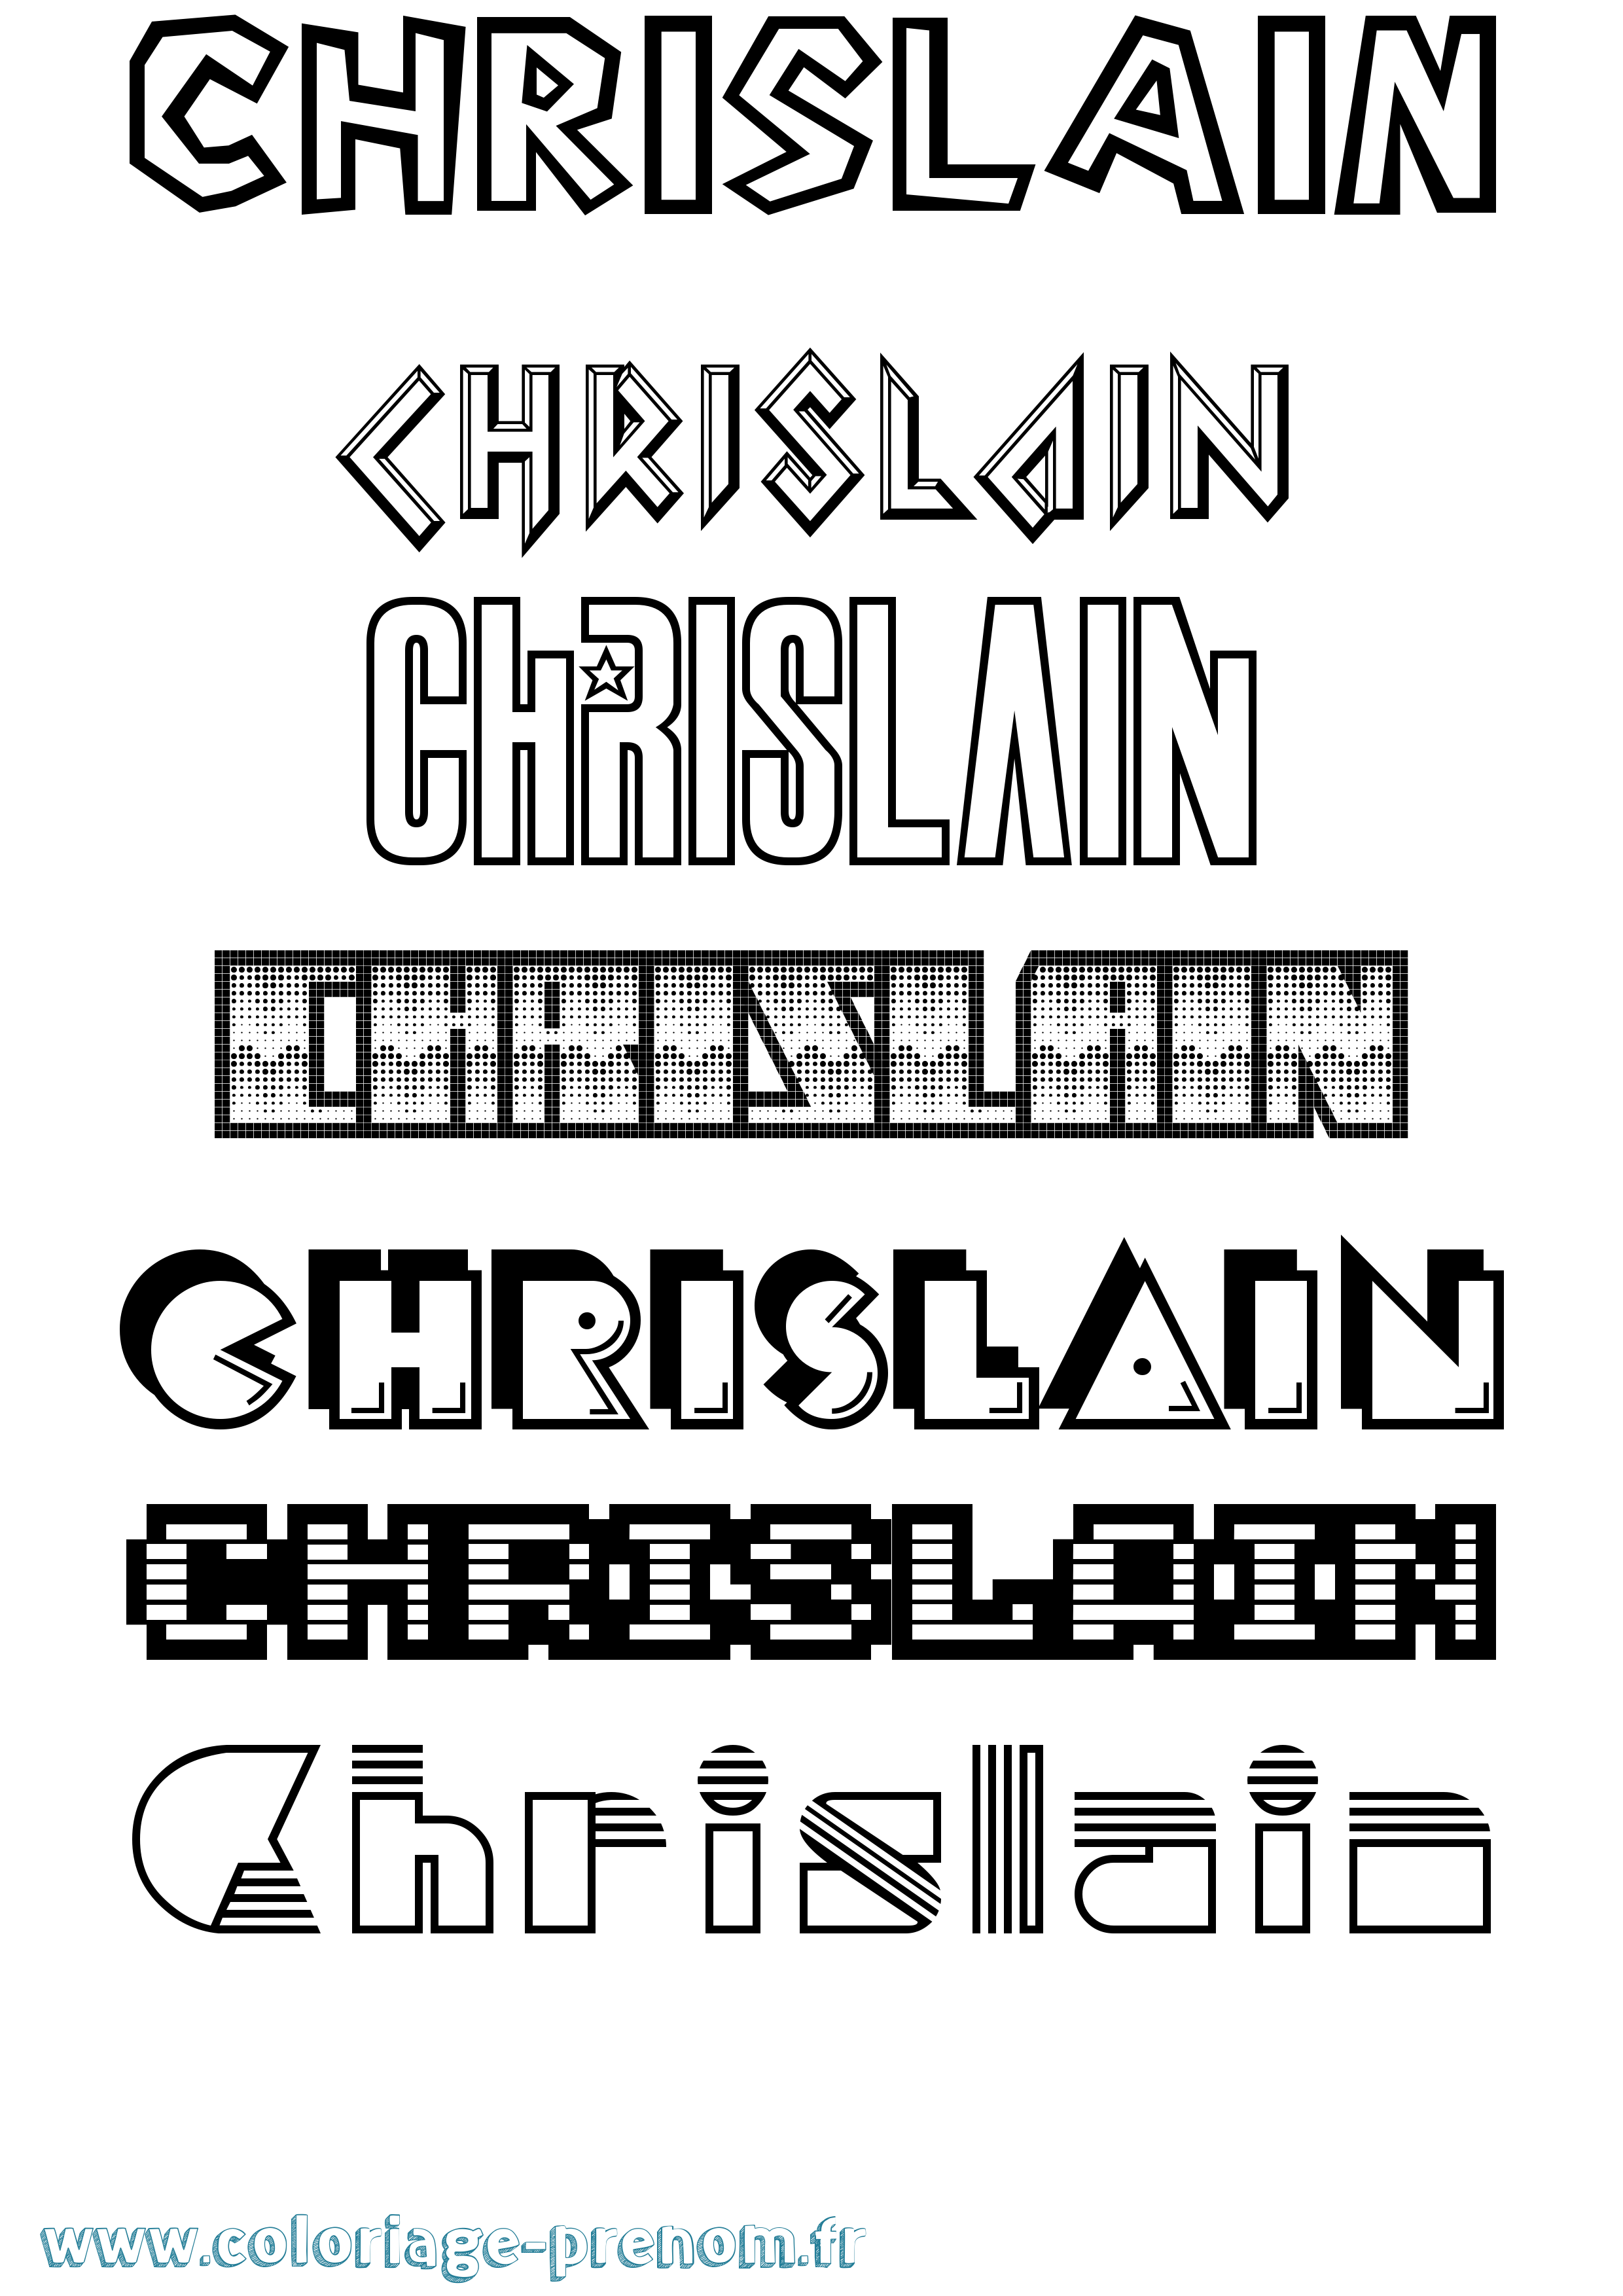 Coloriage prénom Chrislain Jeux Vidéos